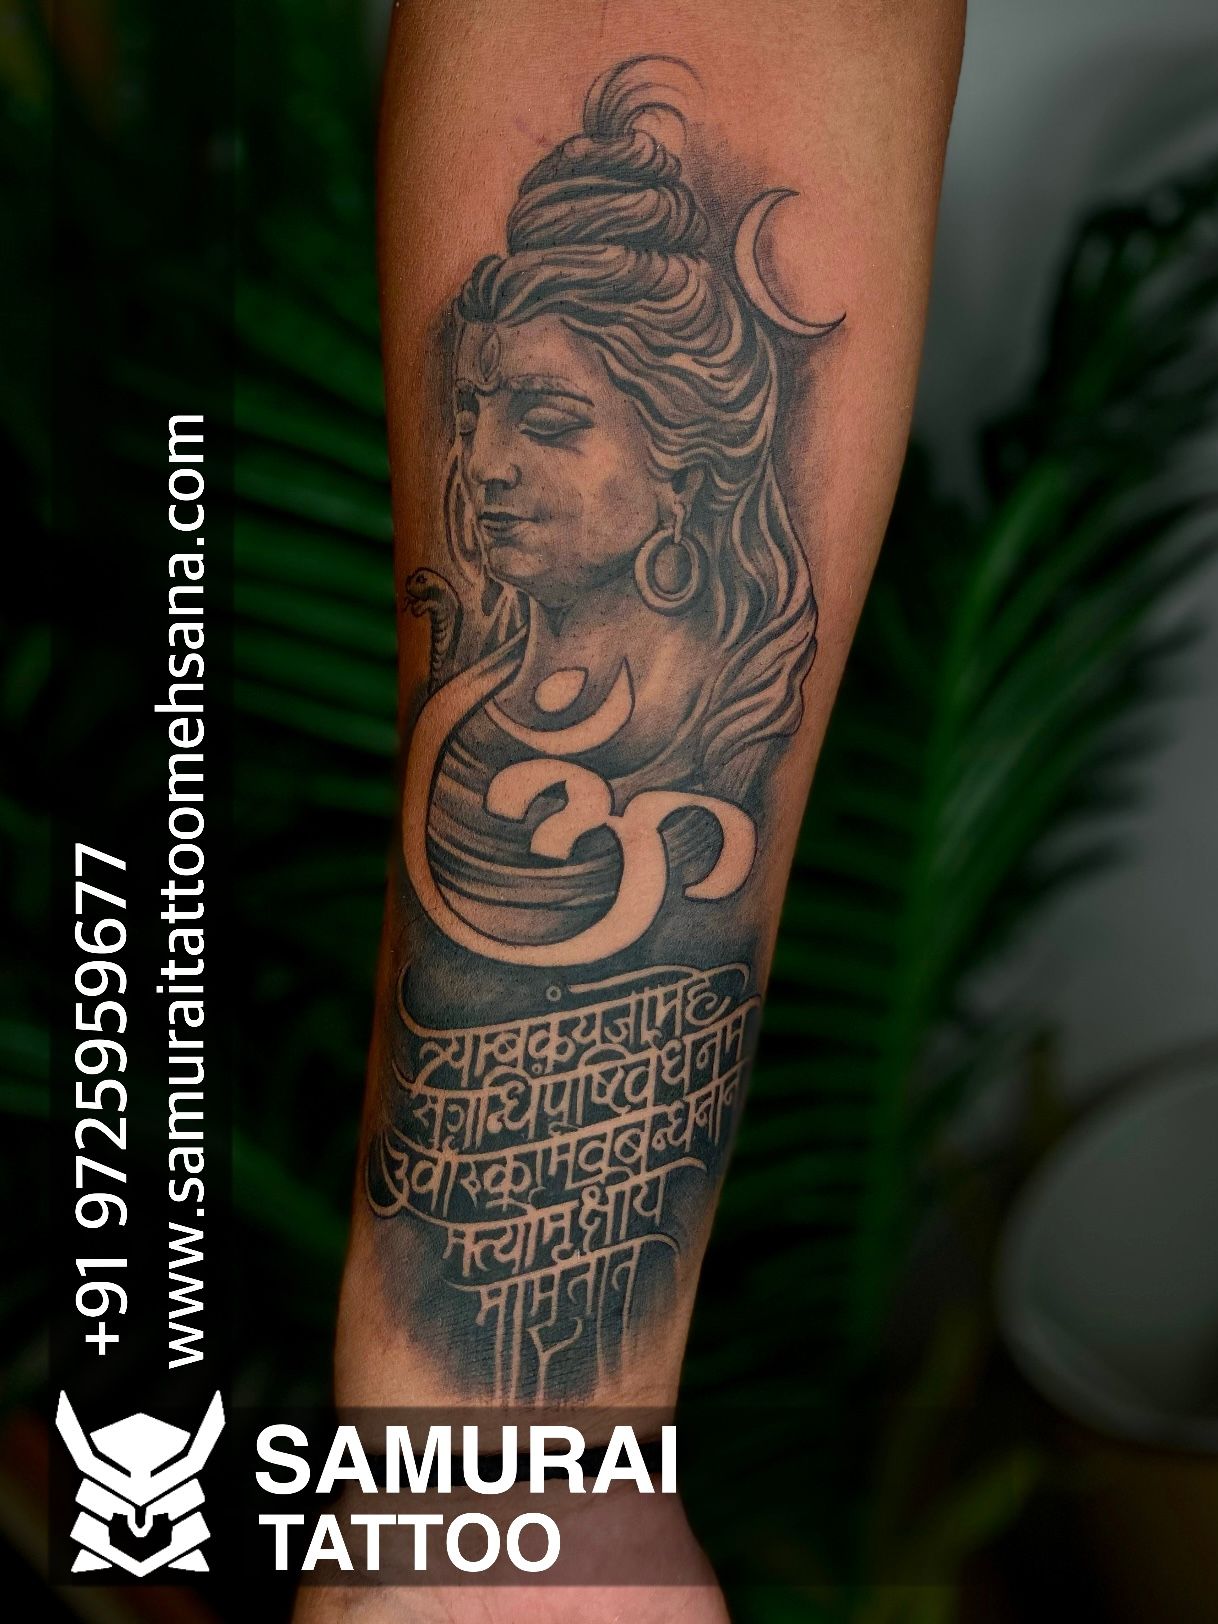 Trishul tattoo om tattoo....... Mahadev tat by Rtattoostudio on DeviantArt